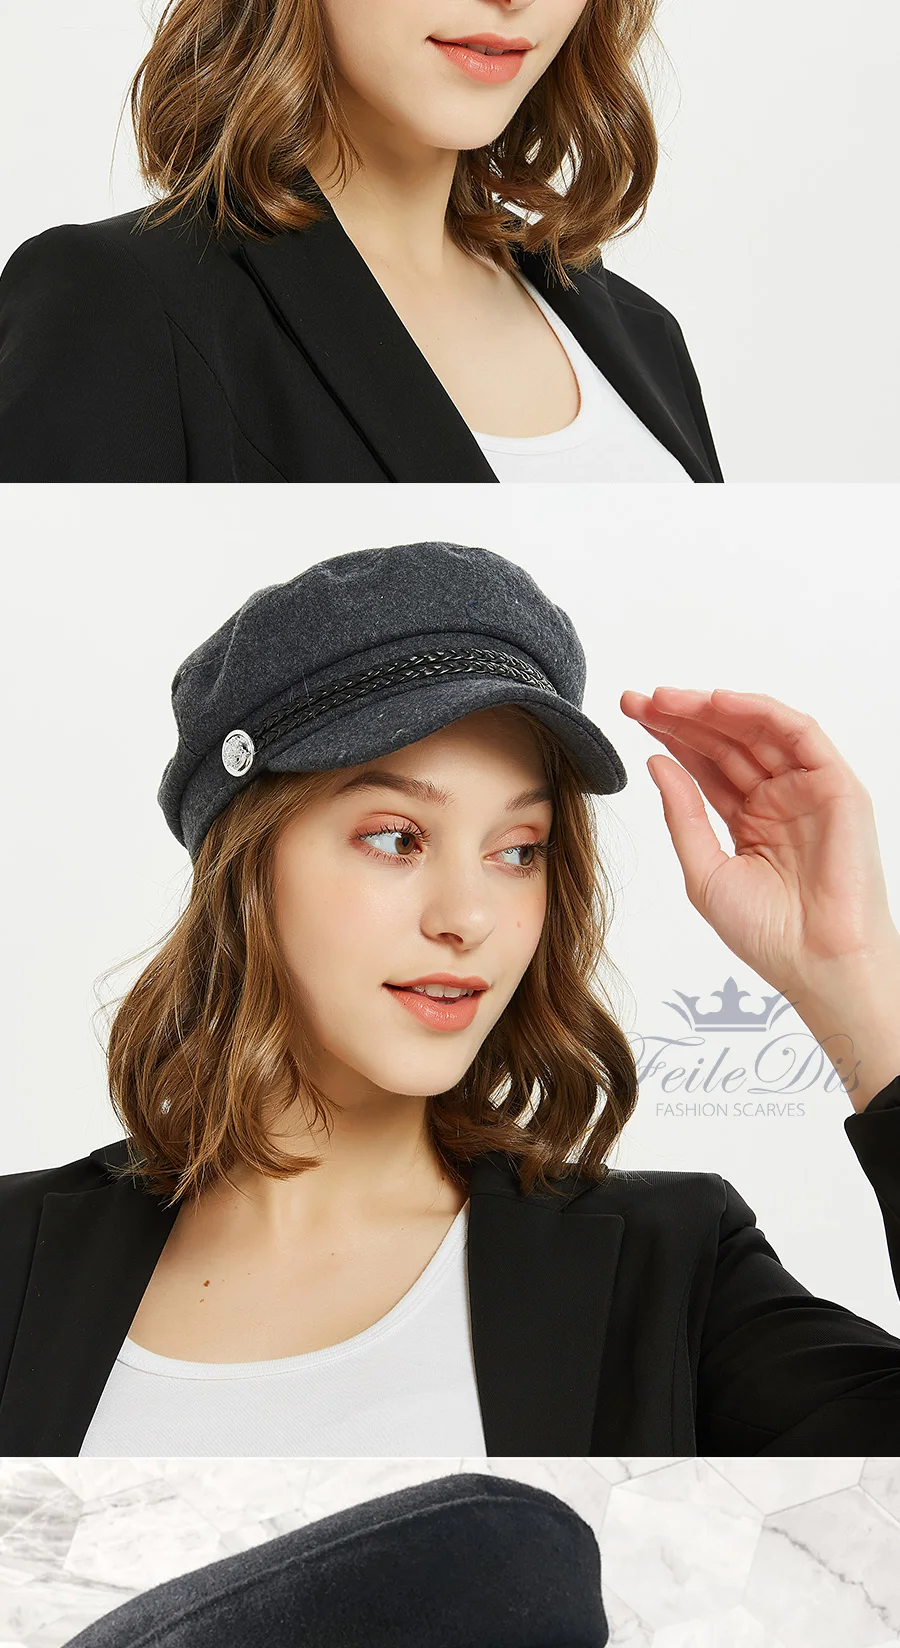 [FEILEDIS] серый полосатый Военные cap Модные Шапки для Для женщин кепки с плоским козырьком армии Salior военная шляпа LR-02